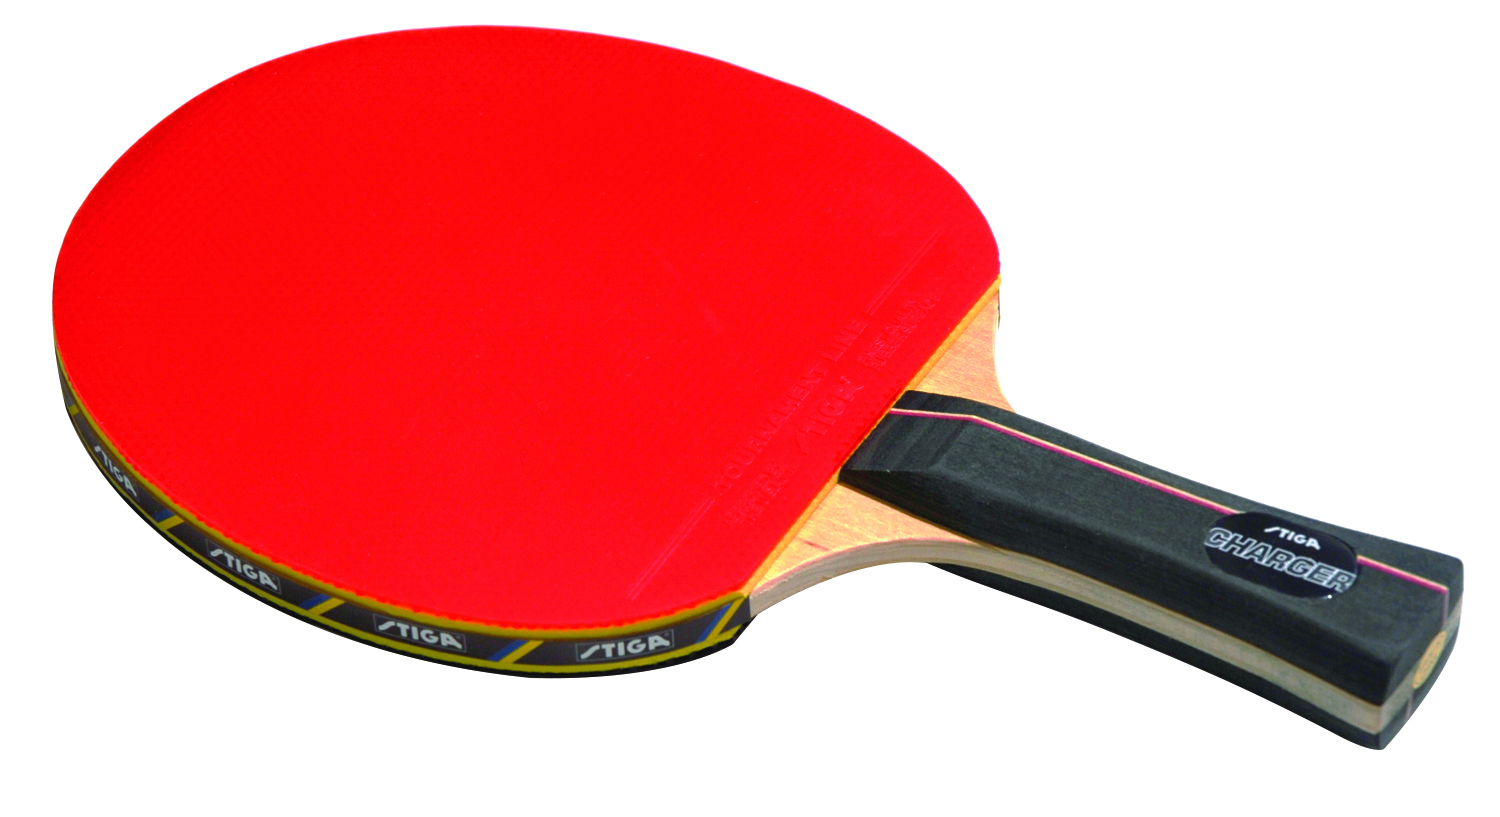 stiga table tennis bats